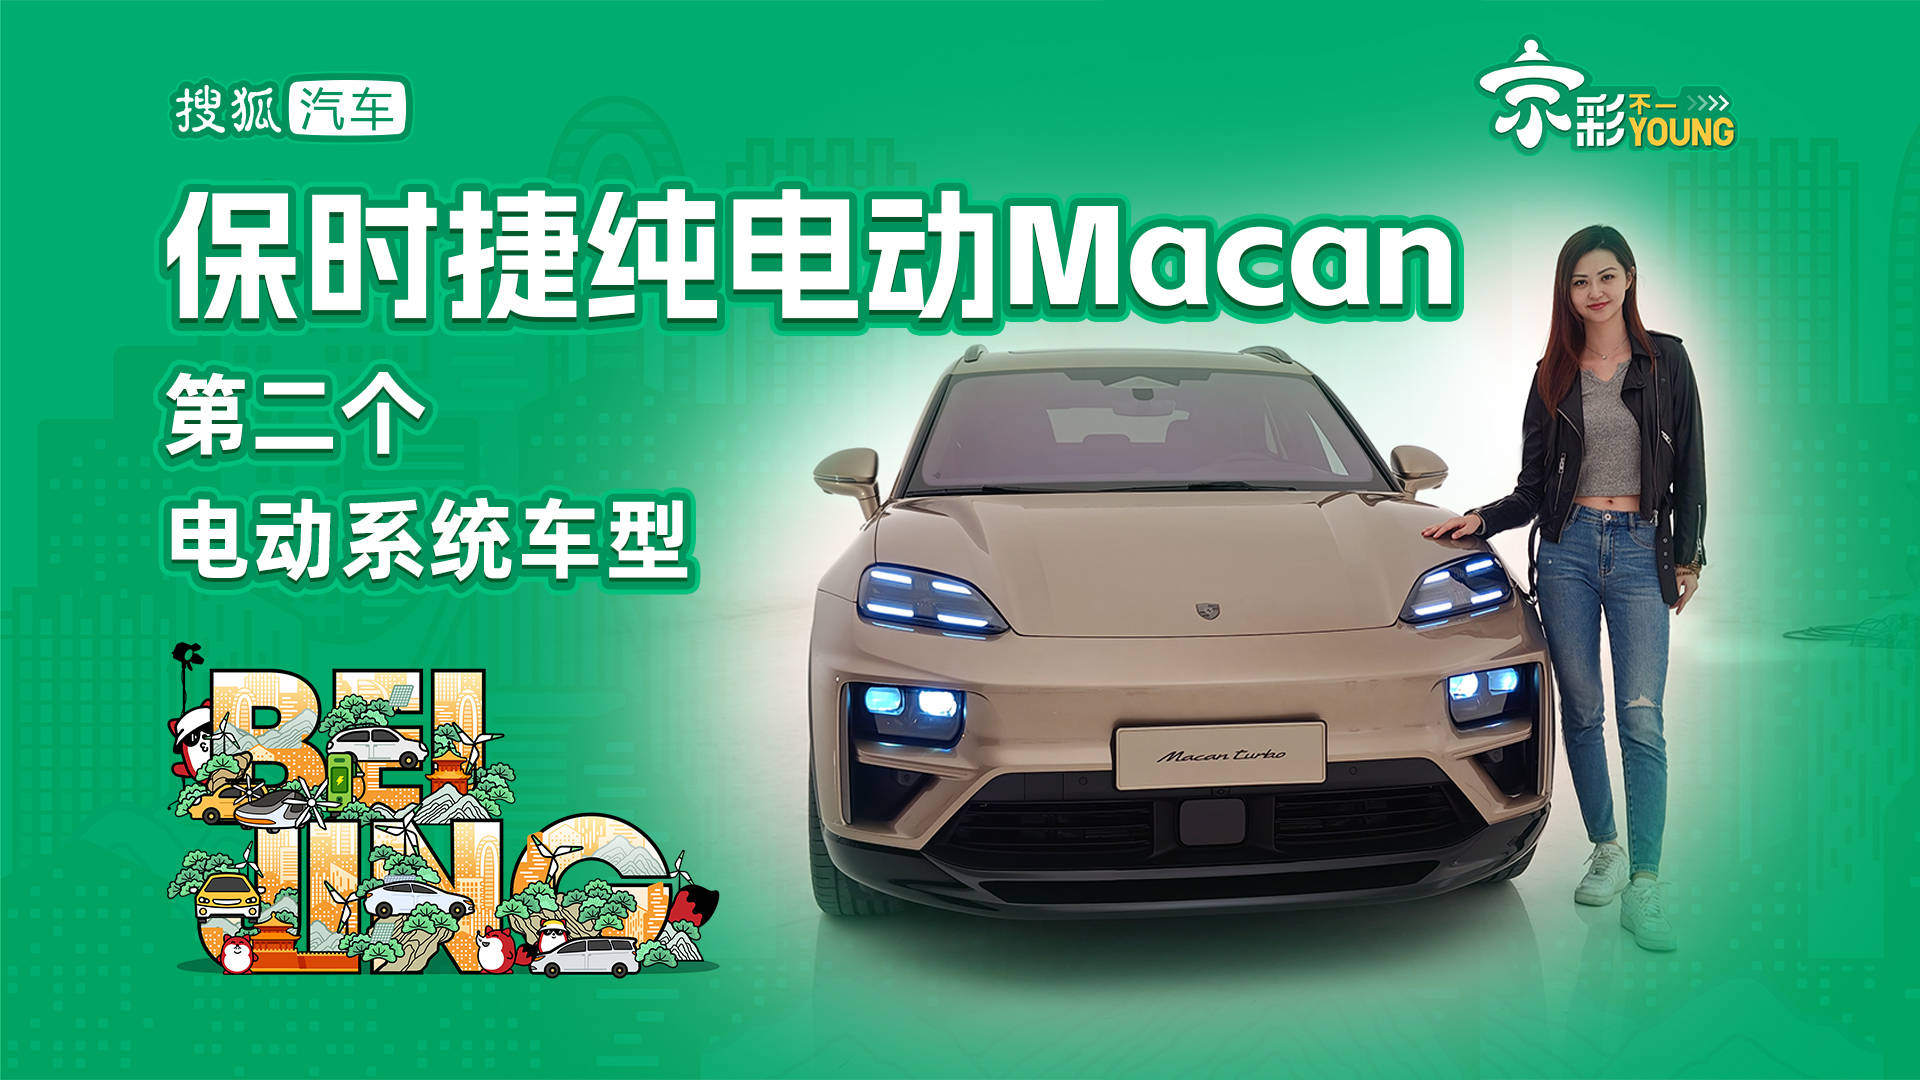 保时捷纯电动Macan第二款电动系统车型_搜狐汽车_搜狐汽车。com